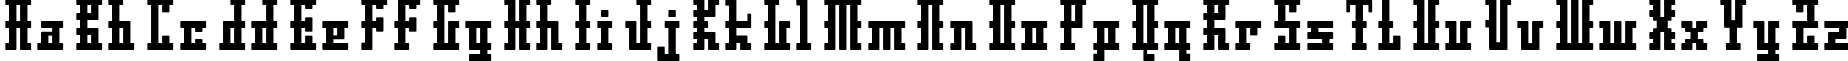 Пример написания английского алфавита шрифтом DS Ayaks Normal